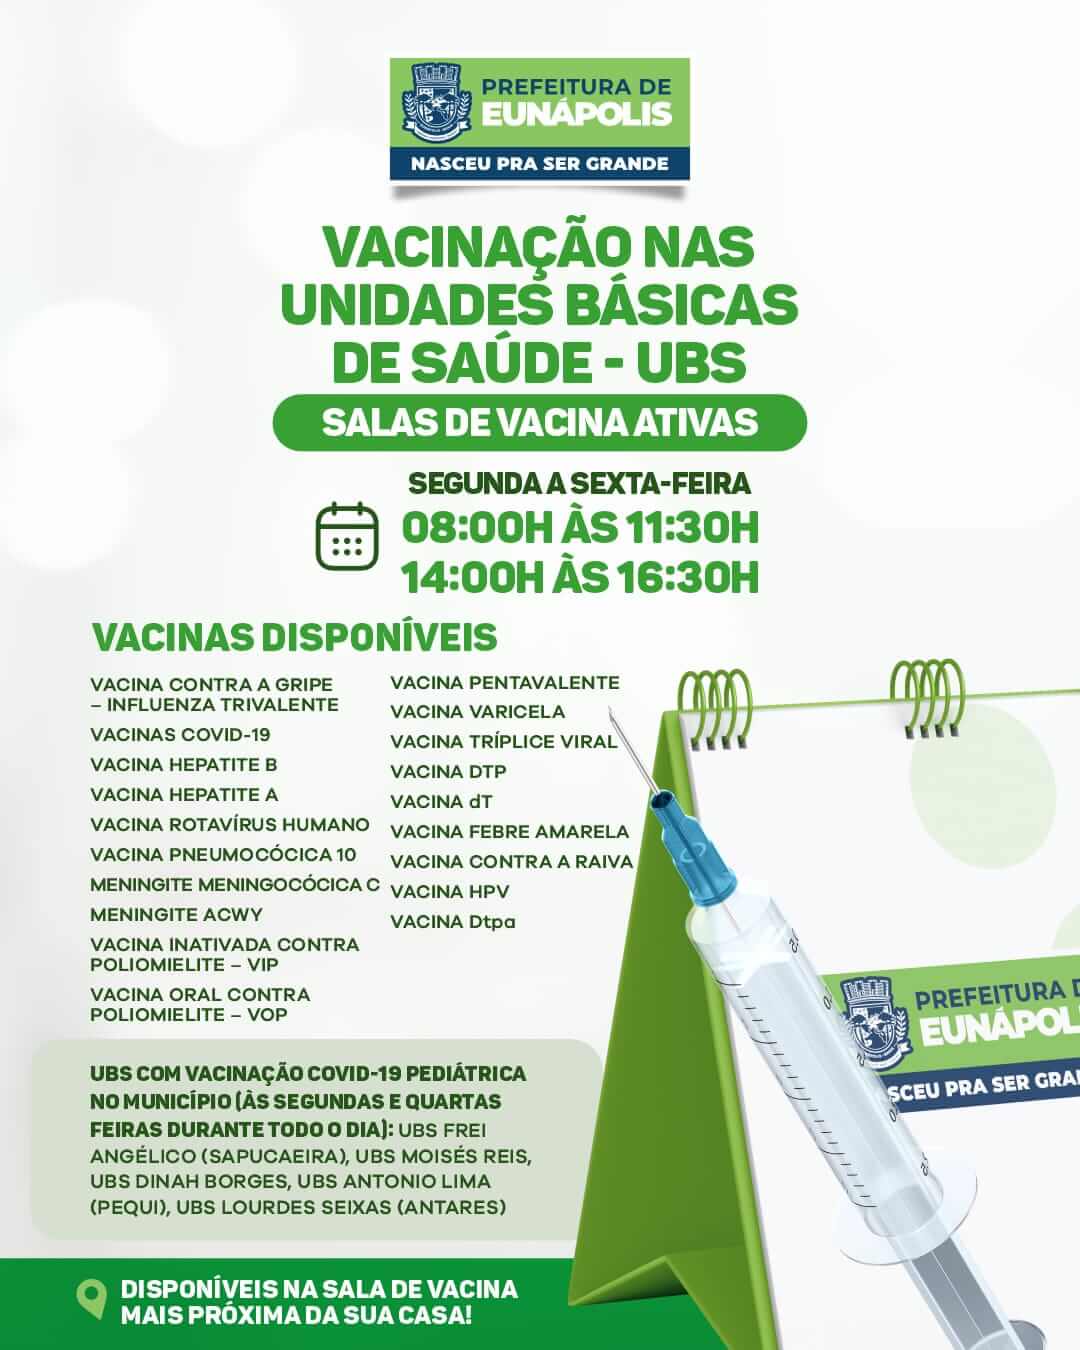 Prefeitura solicita que eunapolitanos atualizem a caderneta de vacinação 28